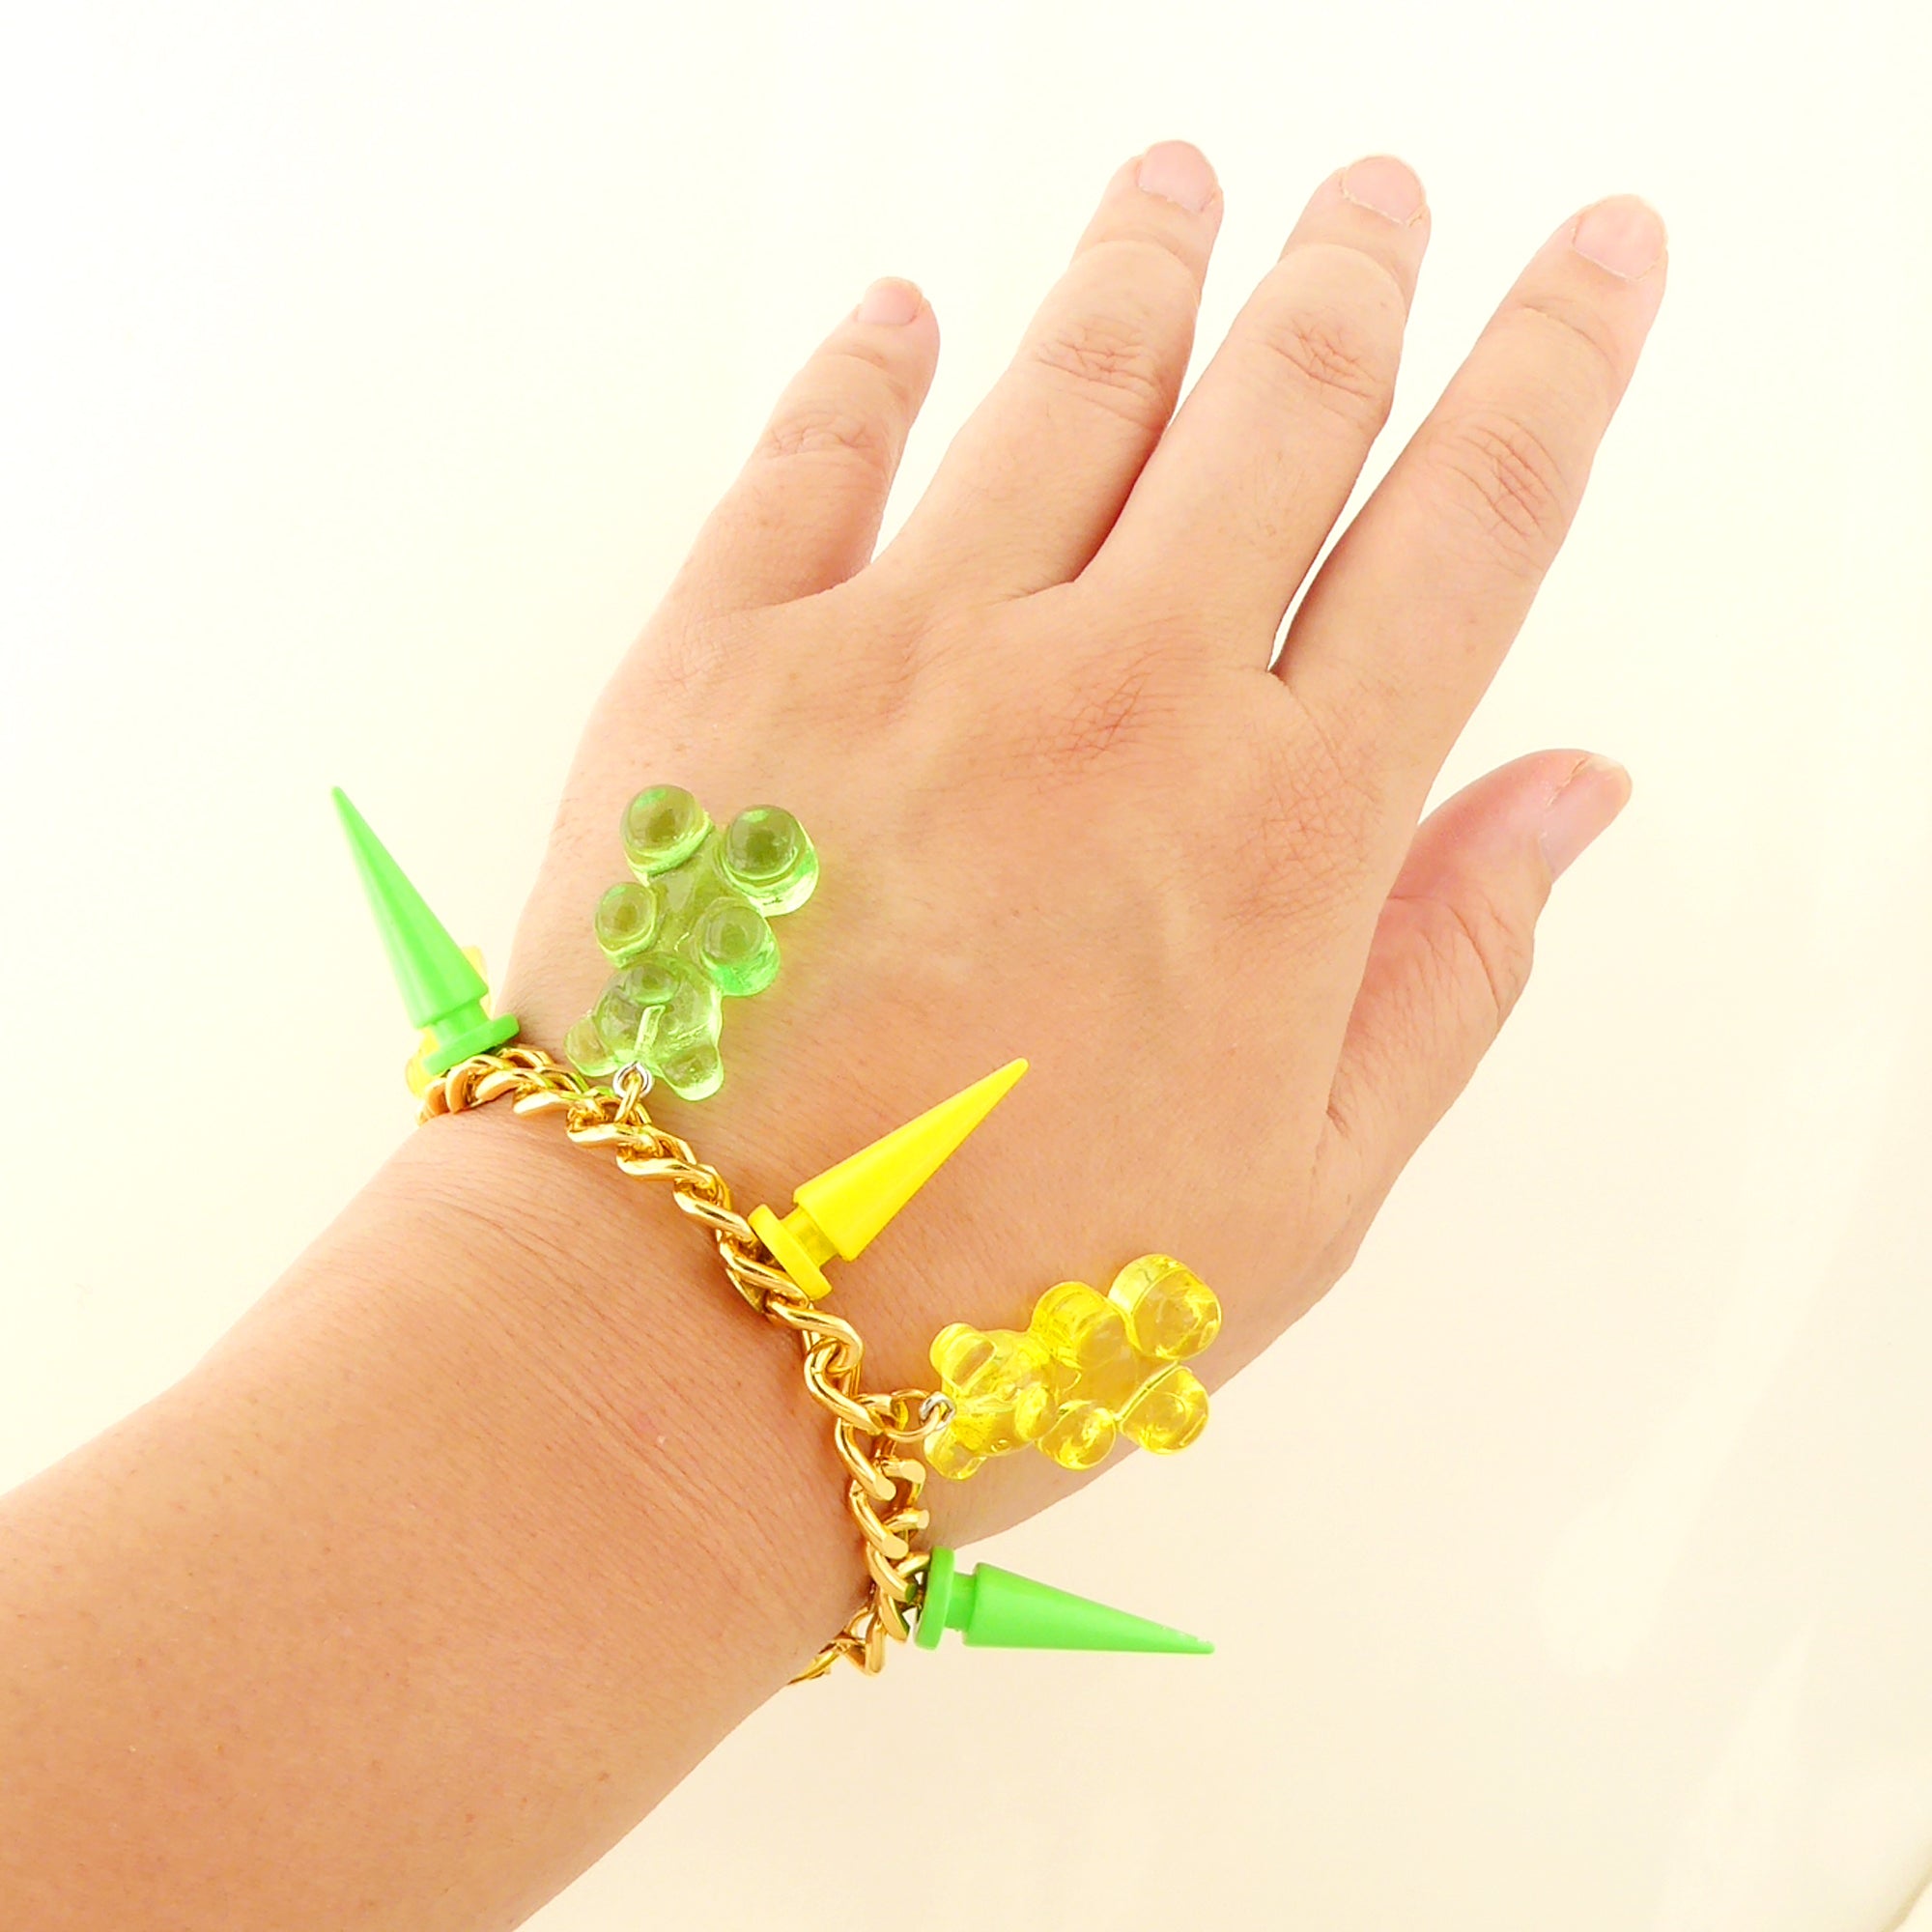 Gummy bear spike bracelet by Jenny Dayco 6